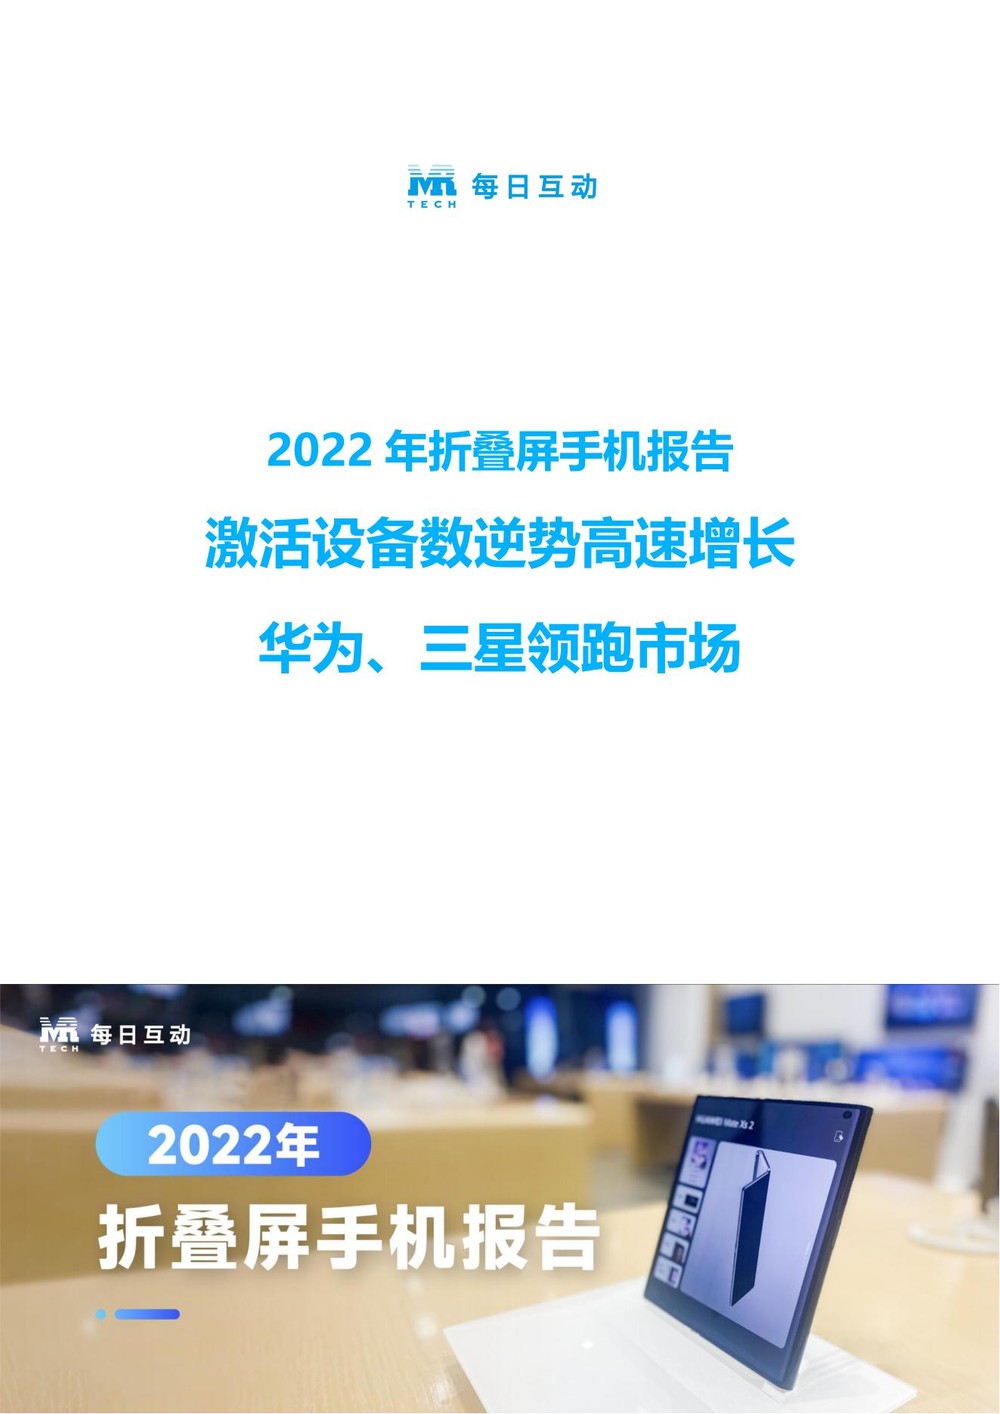 2022年折叠屏手机市场分析报告